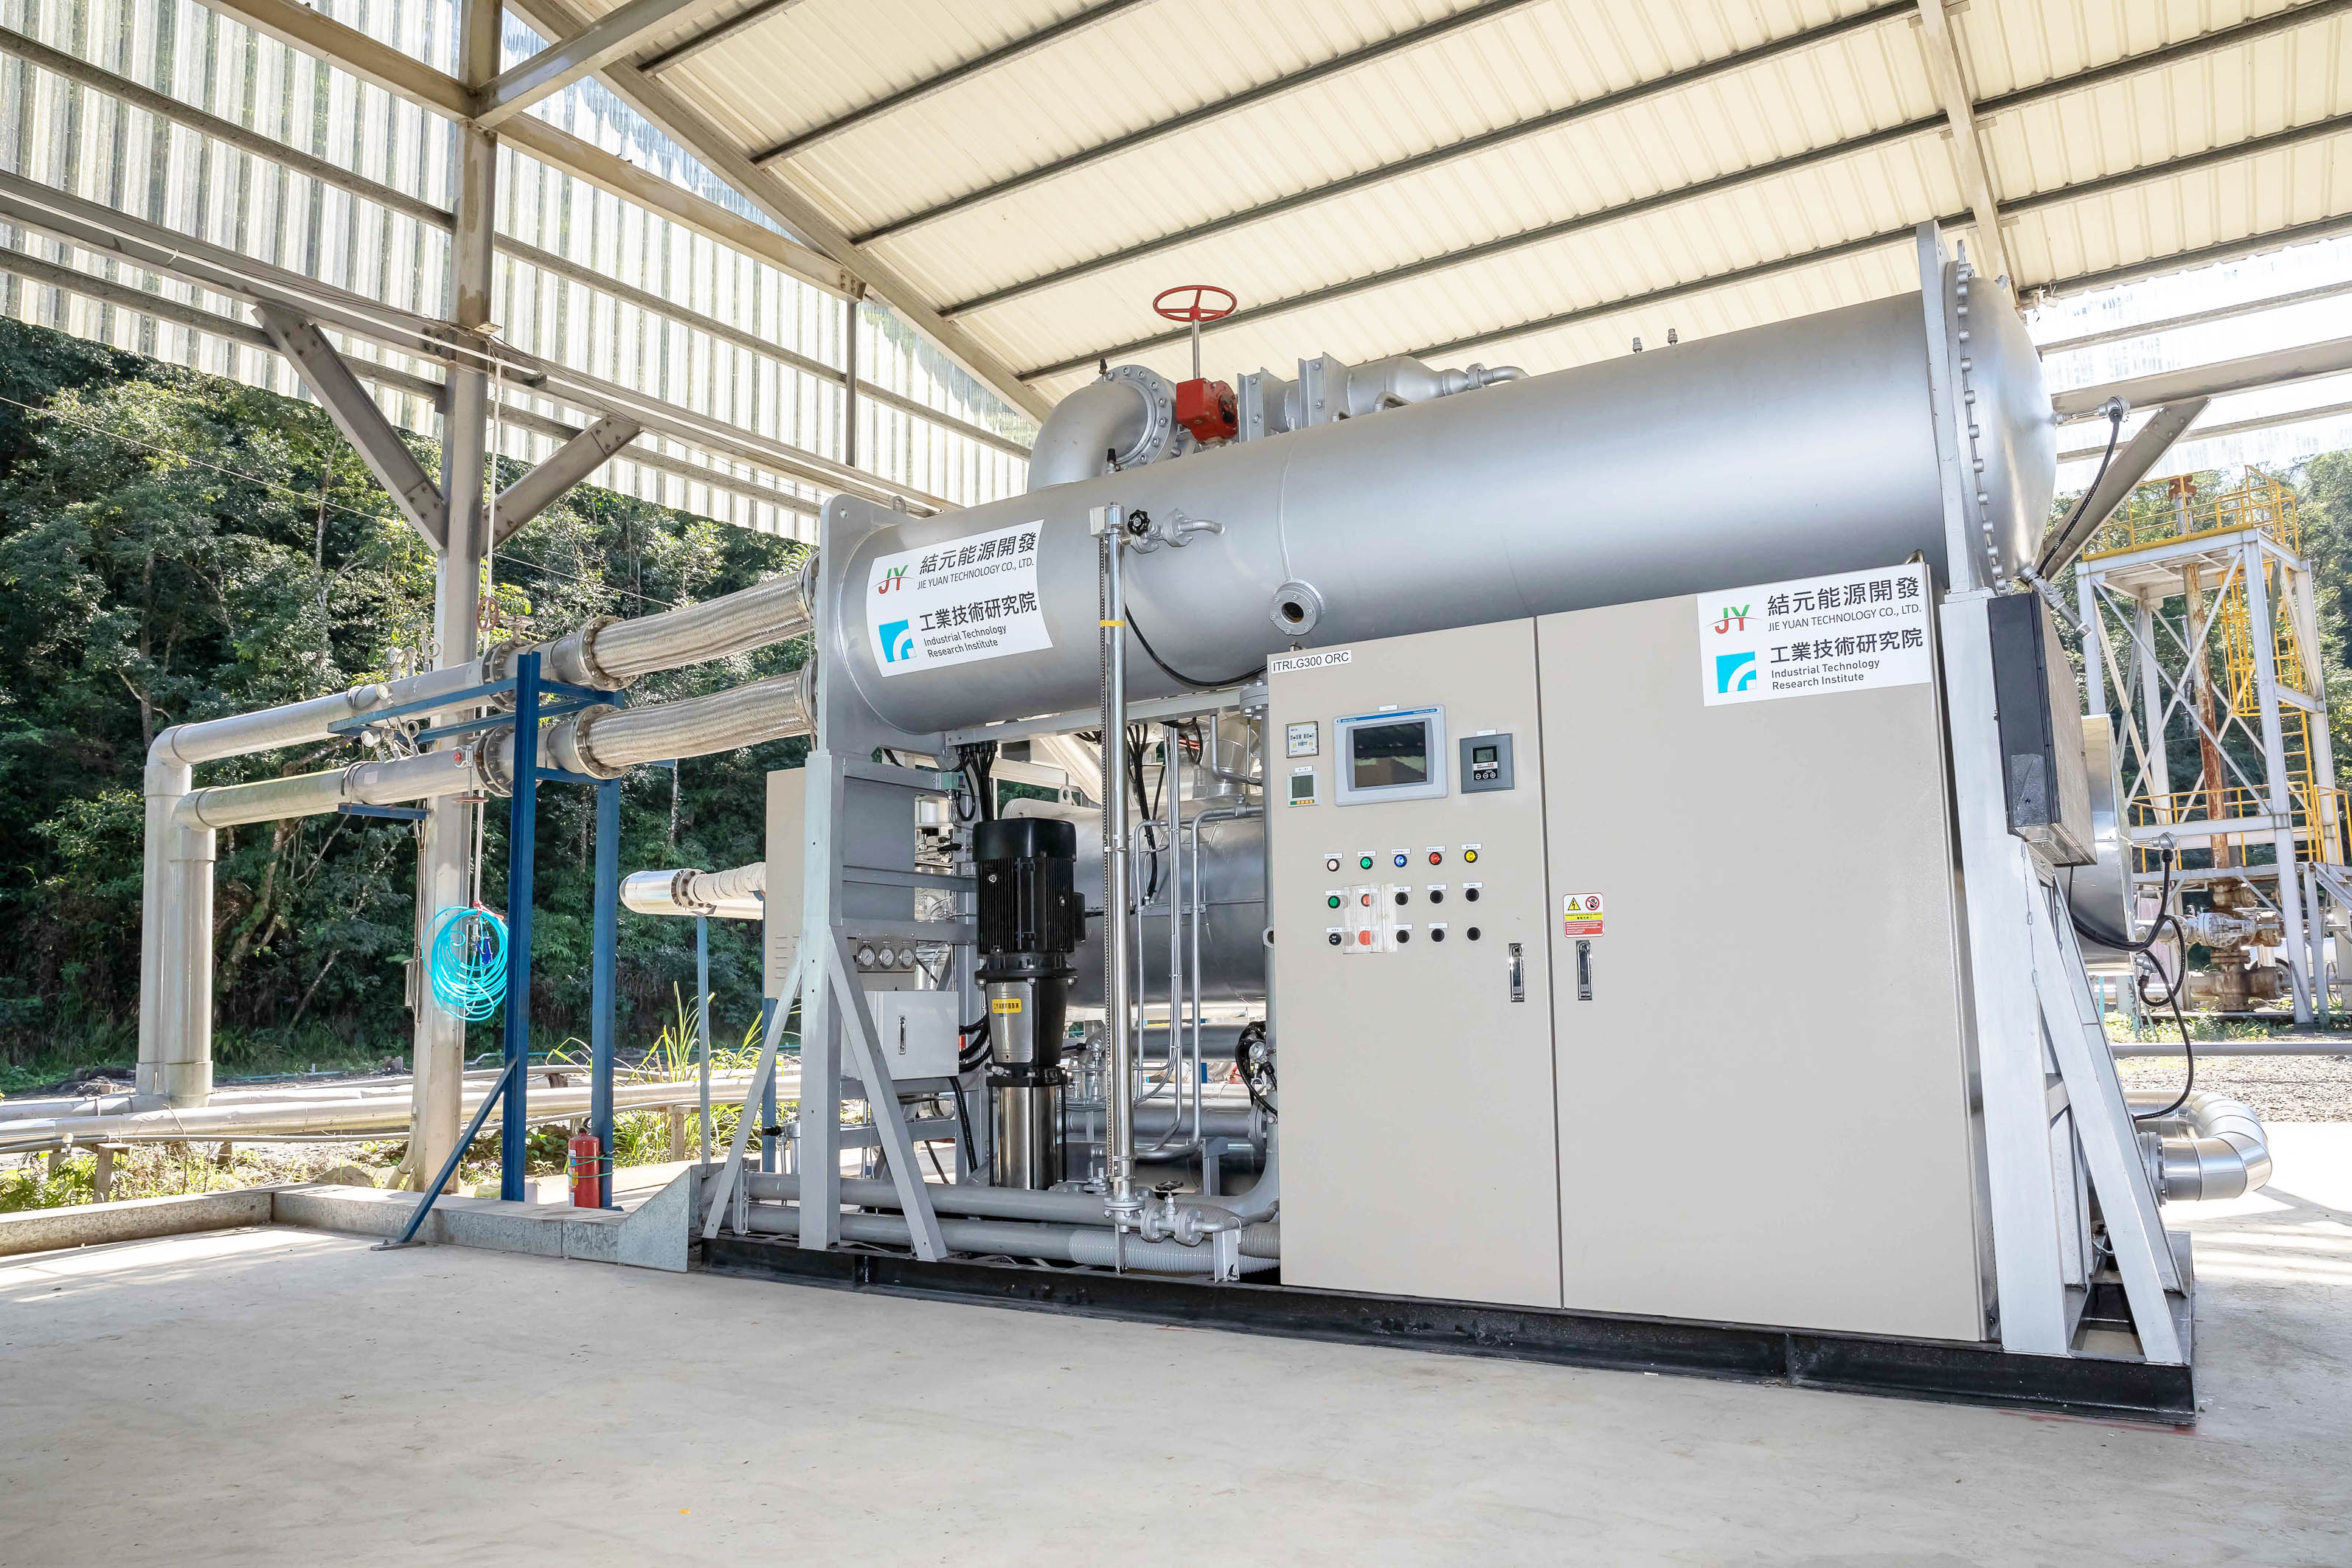 工研院成功打造國內第一座300kW雙循環地熱發電機組，目前在宜蘭清水地熱公園24小時併網運轉中，對帶動國內地熱產業鏈有相當正面的效應。